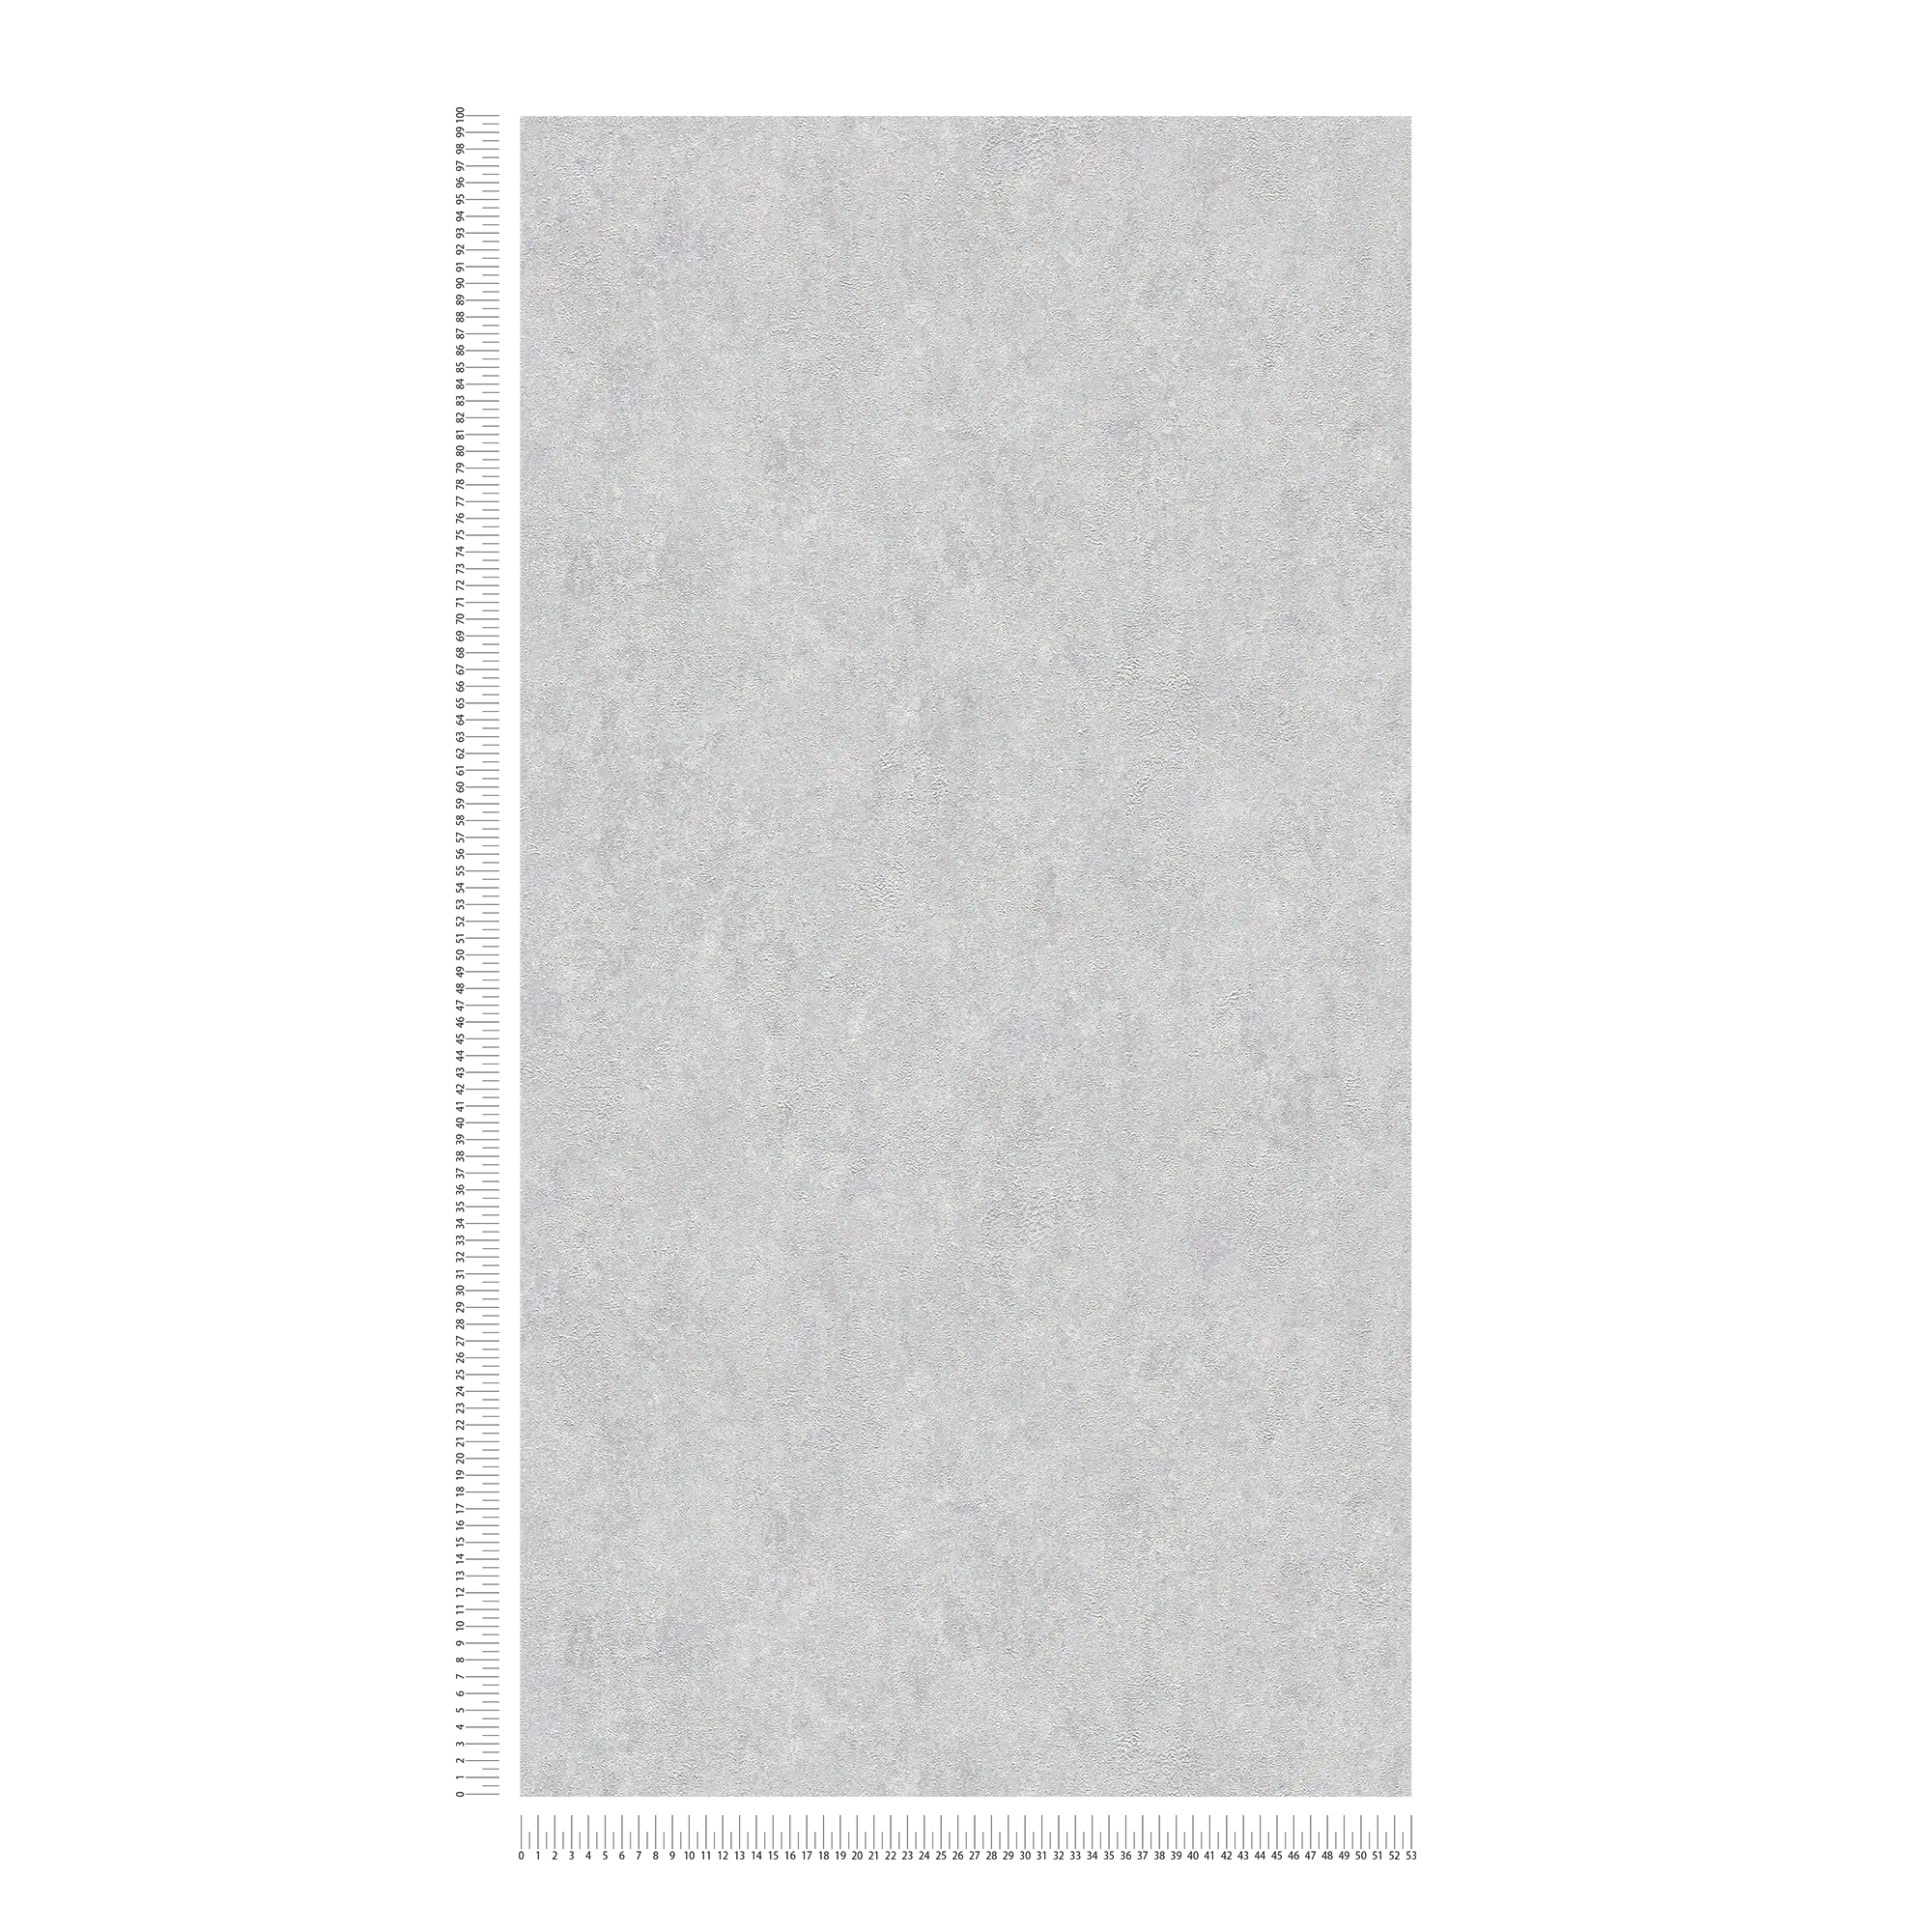             Carta da parati a tinta unita lucida con effetto metallizzato - grigio, argento
        